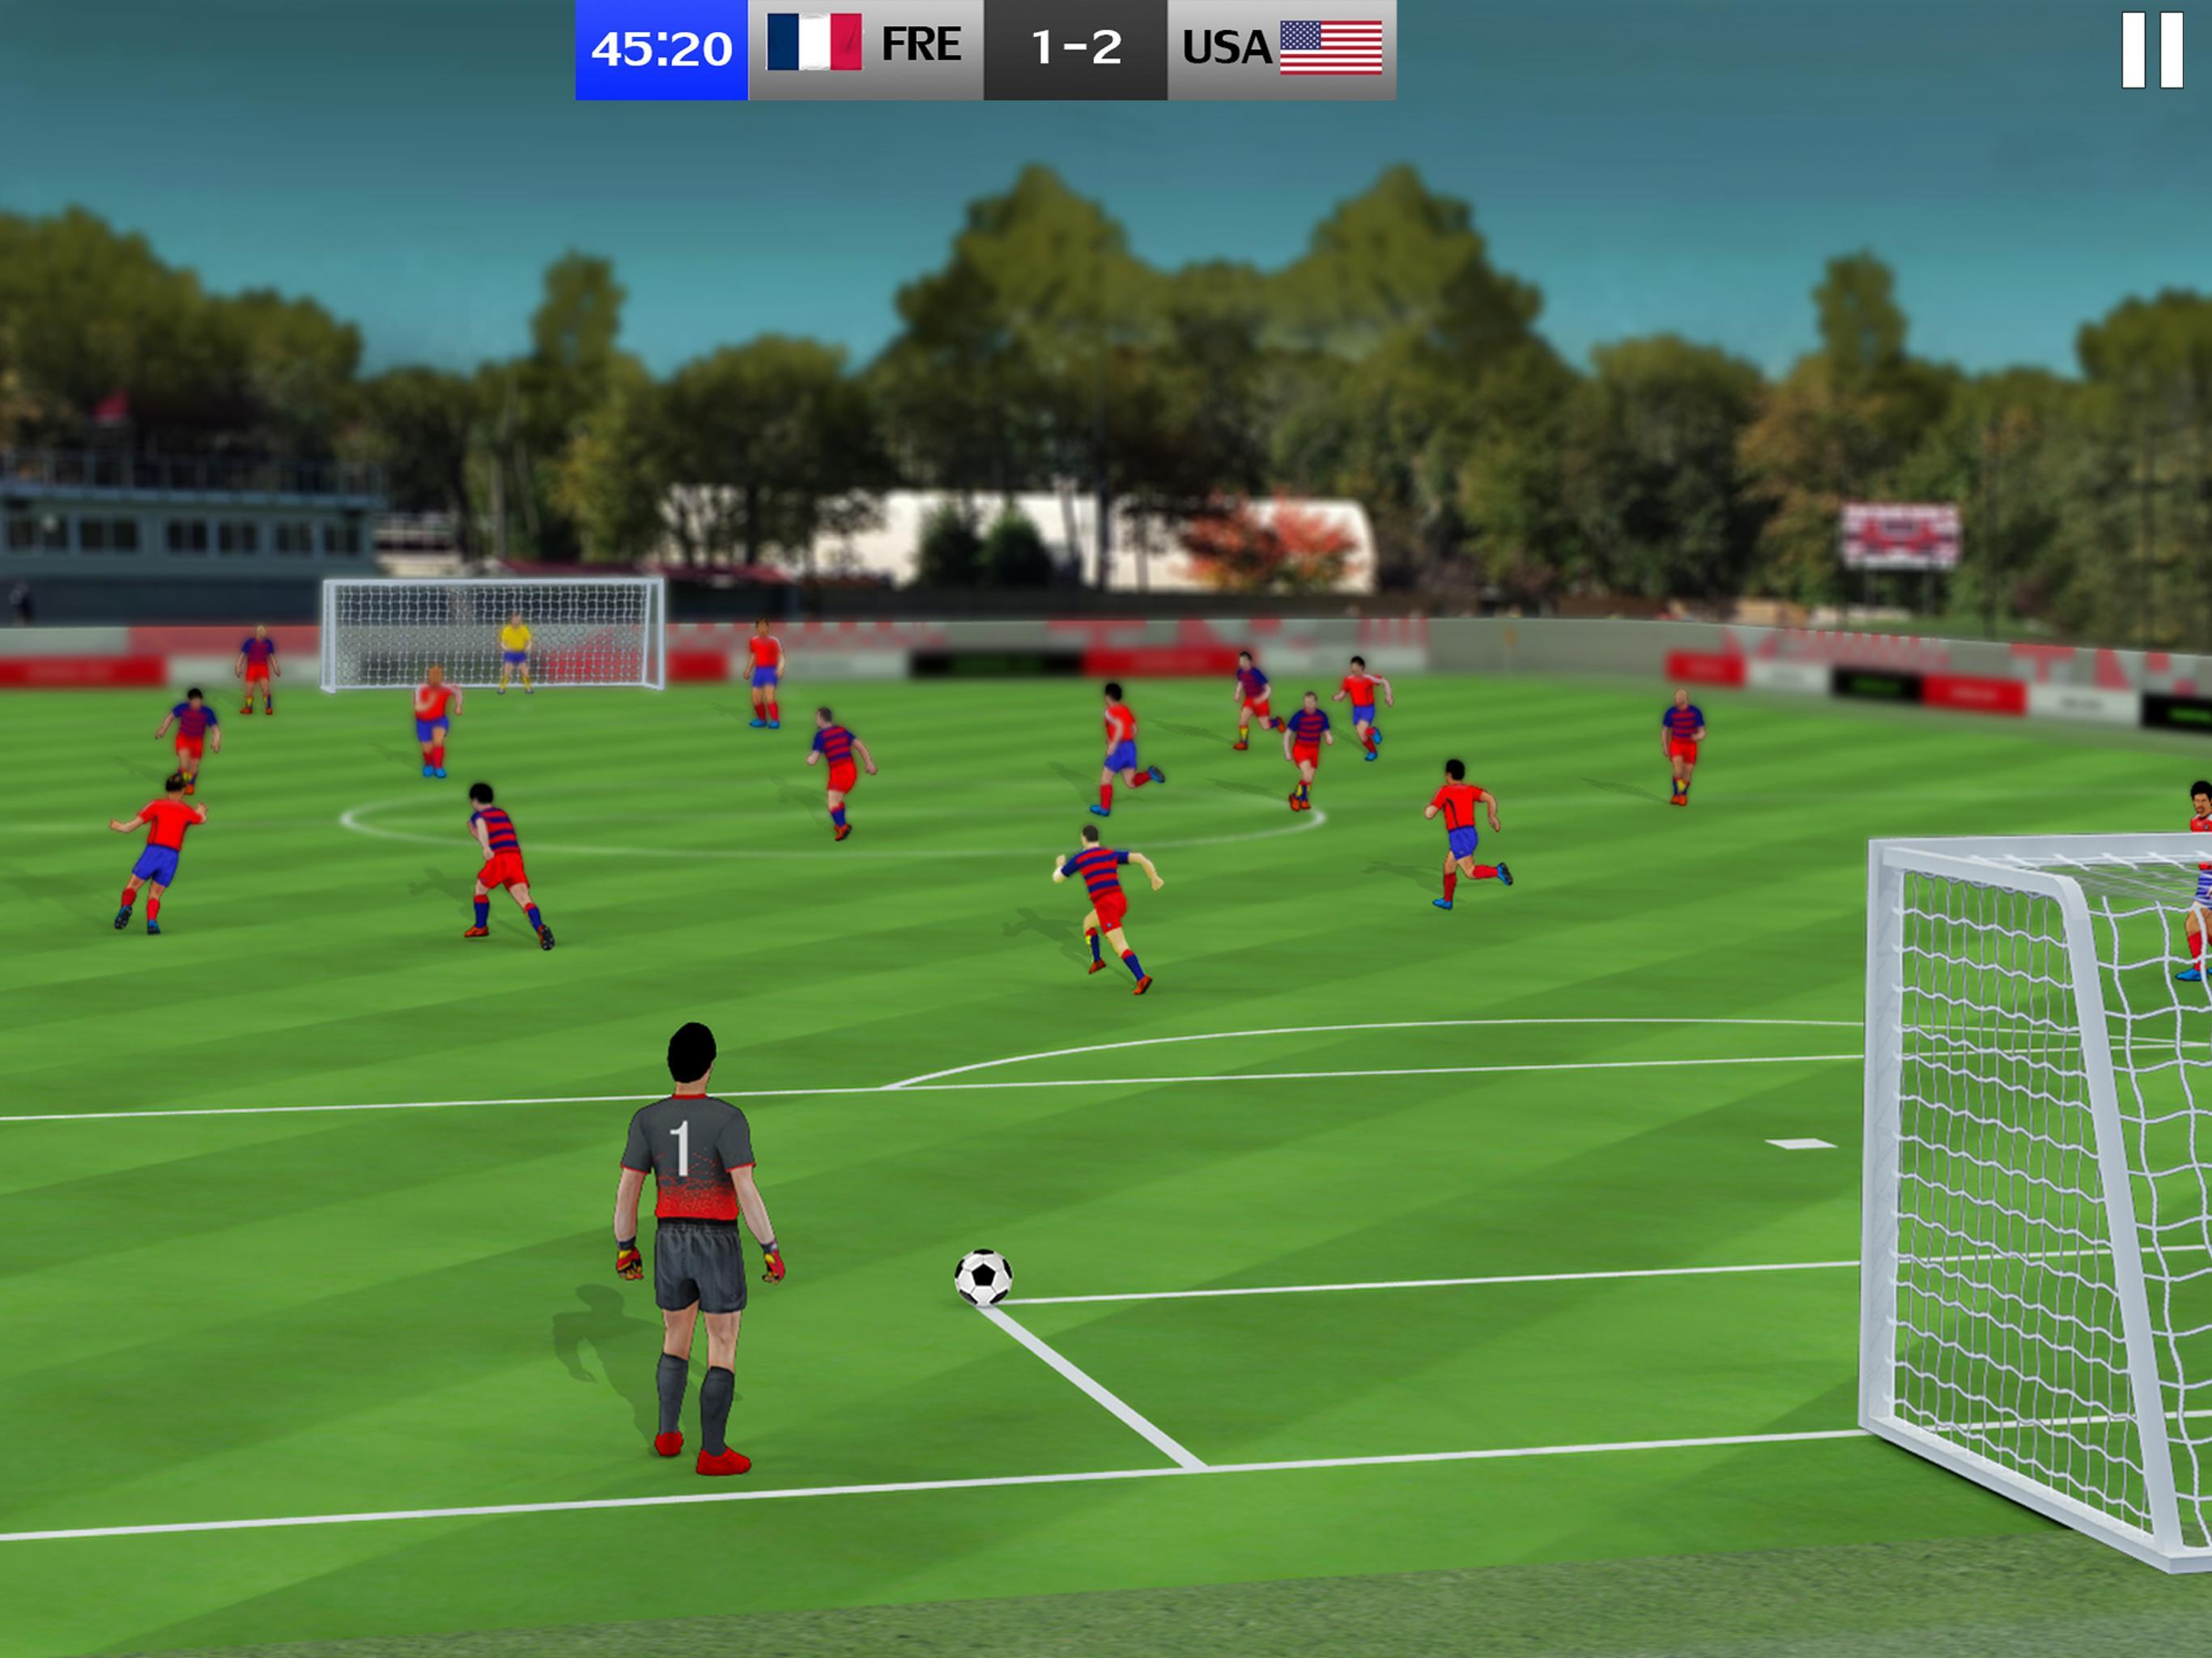 دوري كرة القدم 2019: لعب لعبة النتيجة المباشرة for Android - APK Download